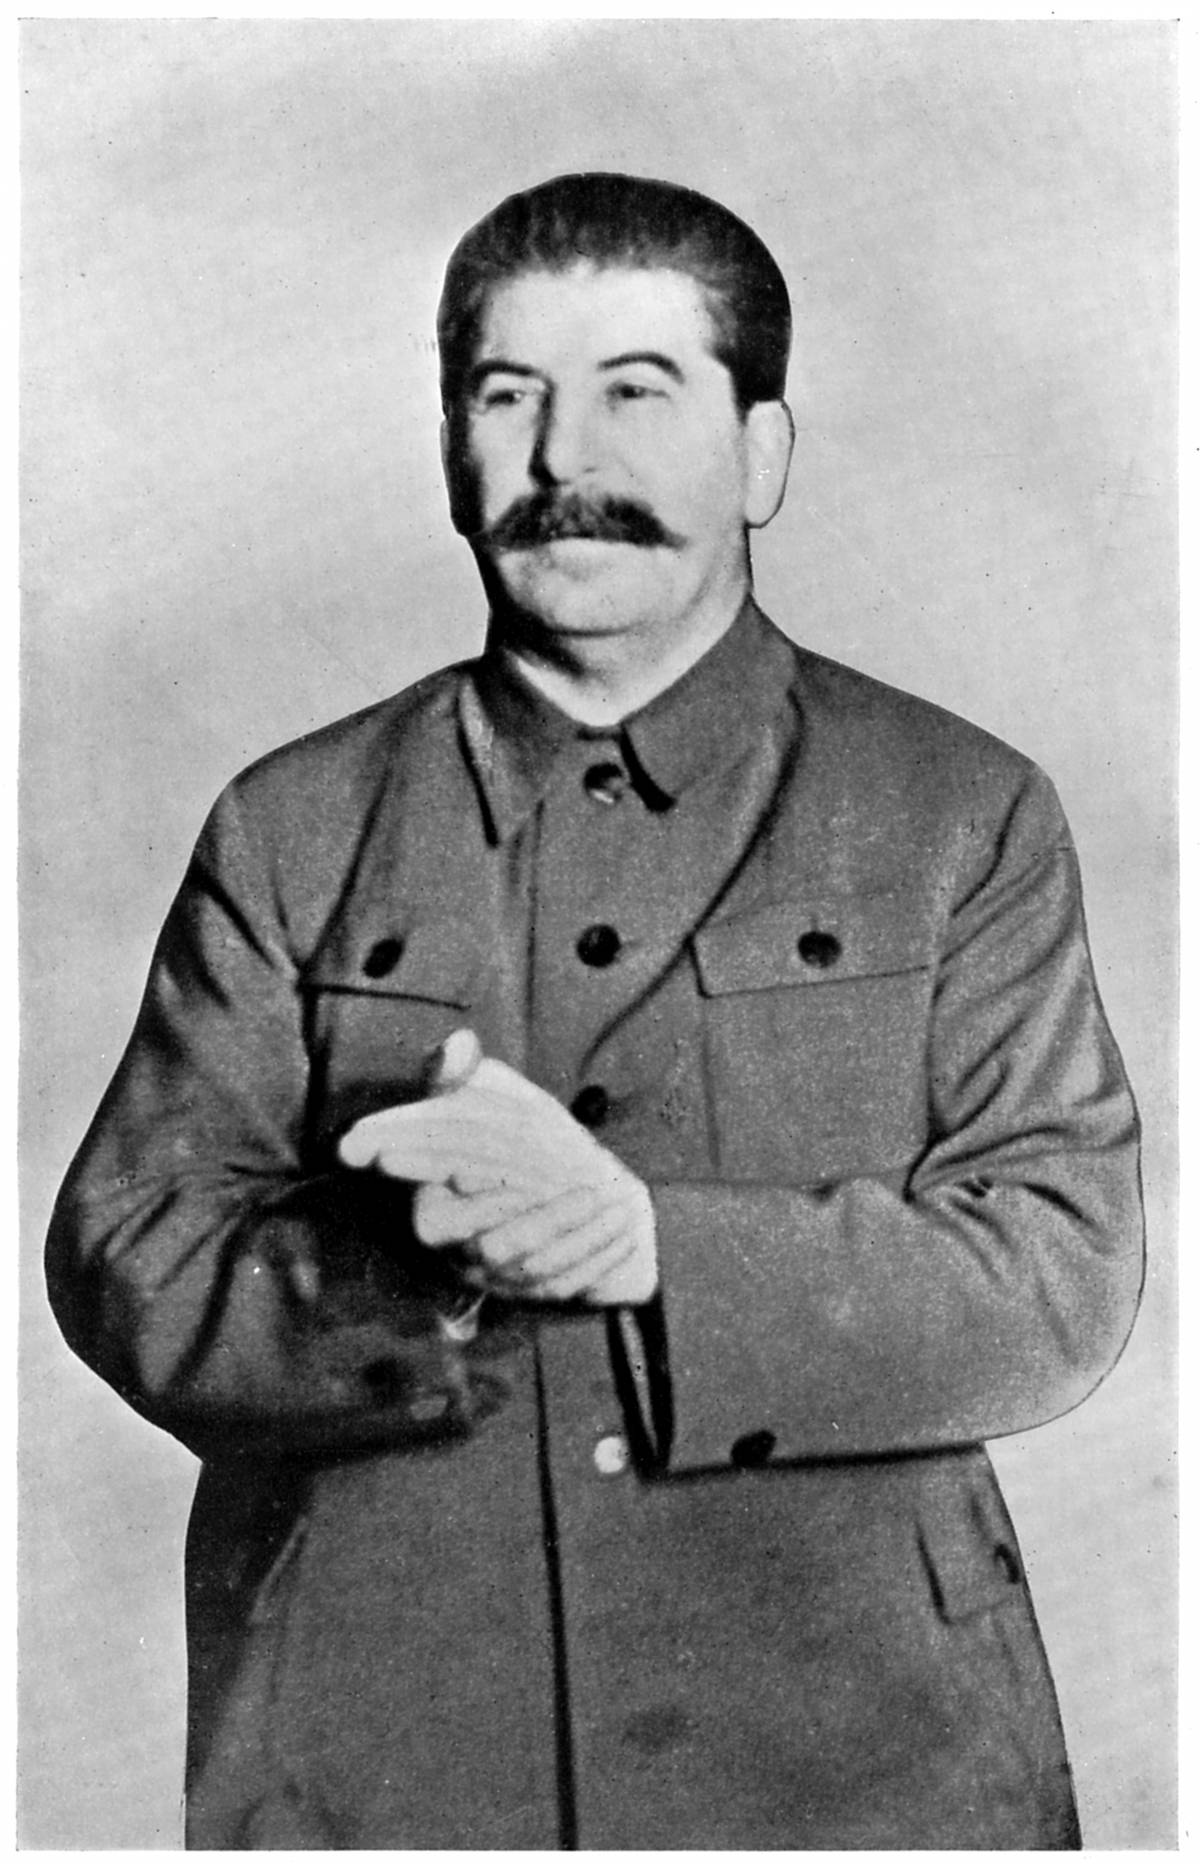 INTERVISTE IMPOSSIBILI Stalin si racconta: 
la battaglia più sanguinaria? Quella contro Dio